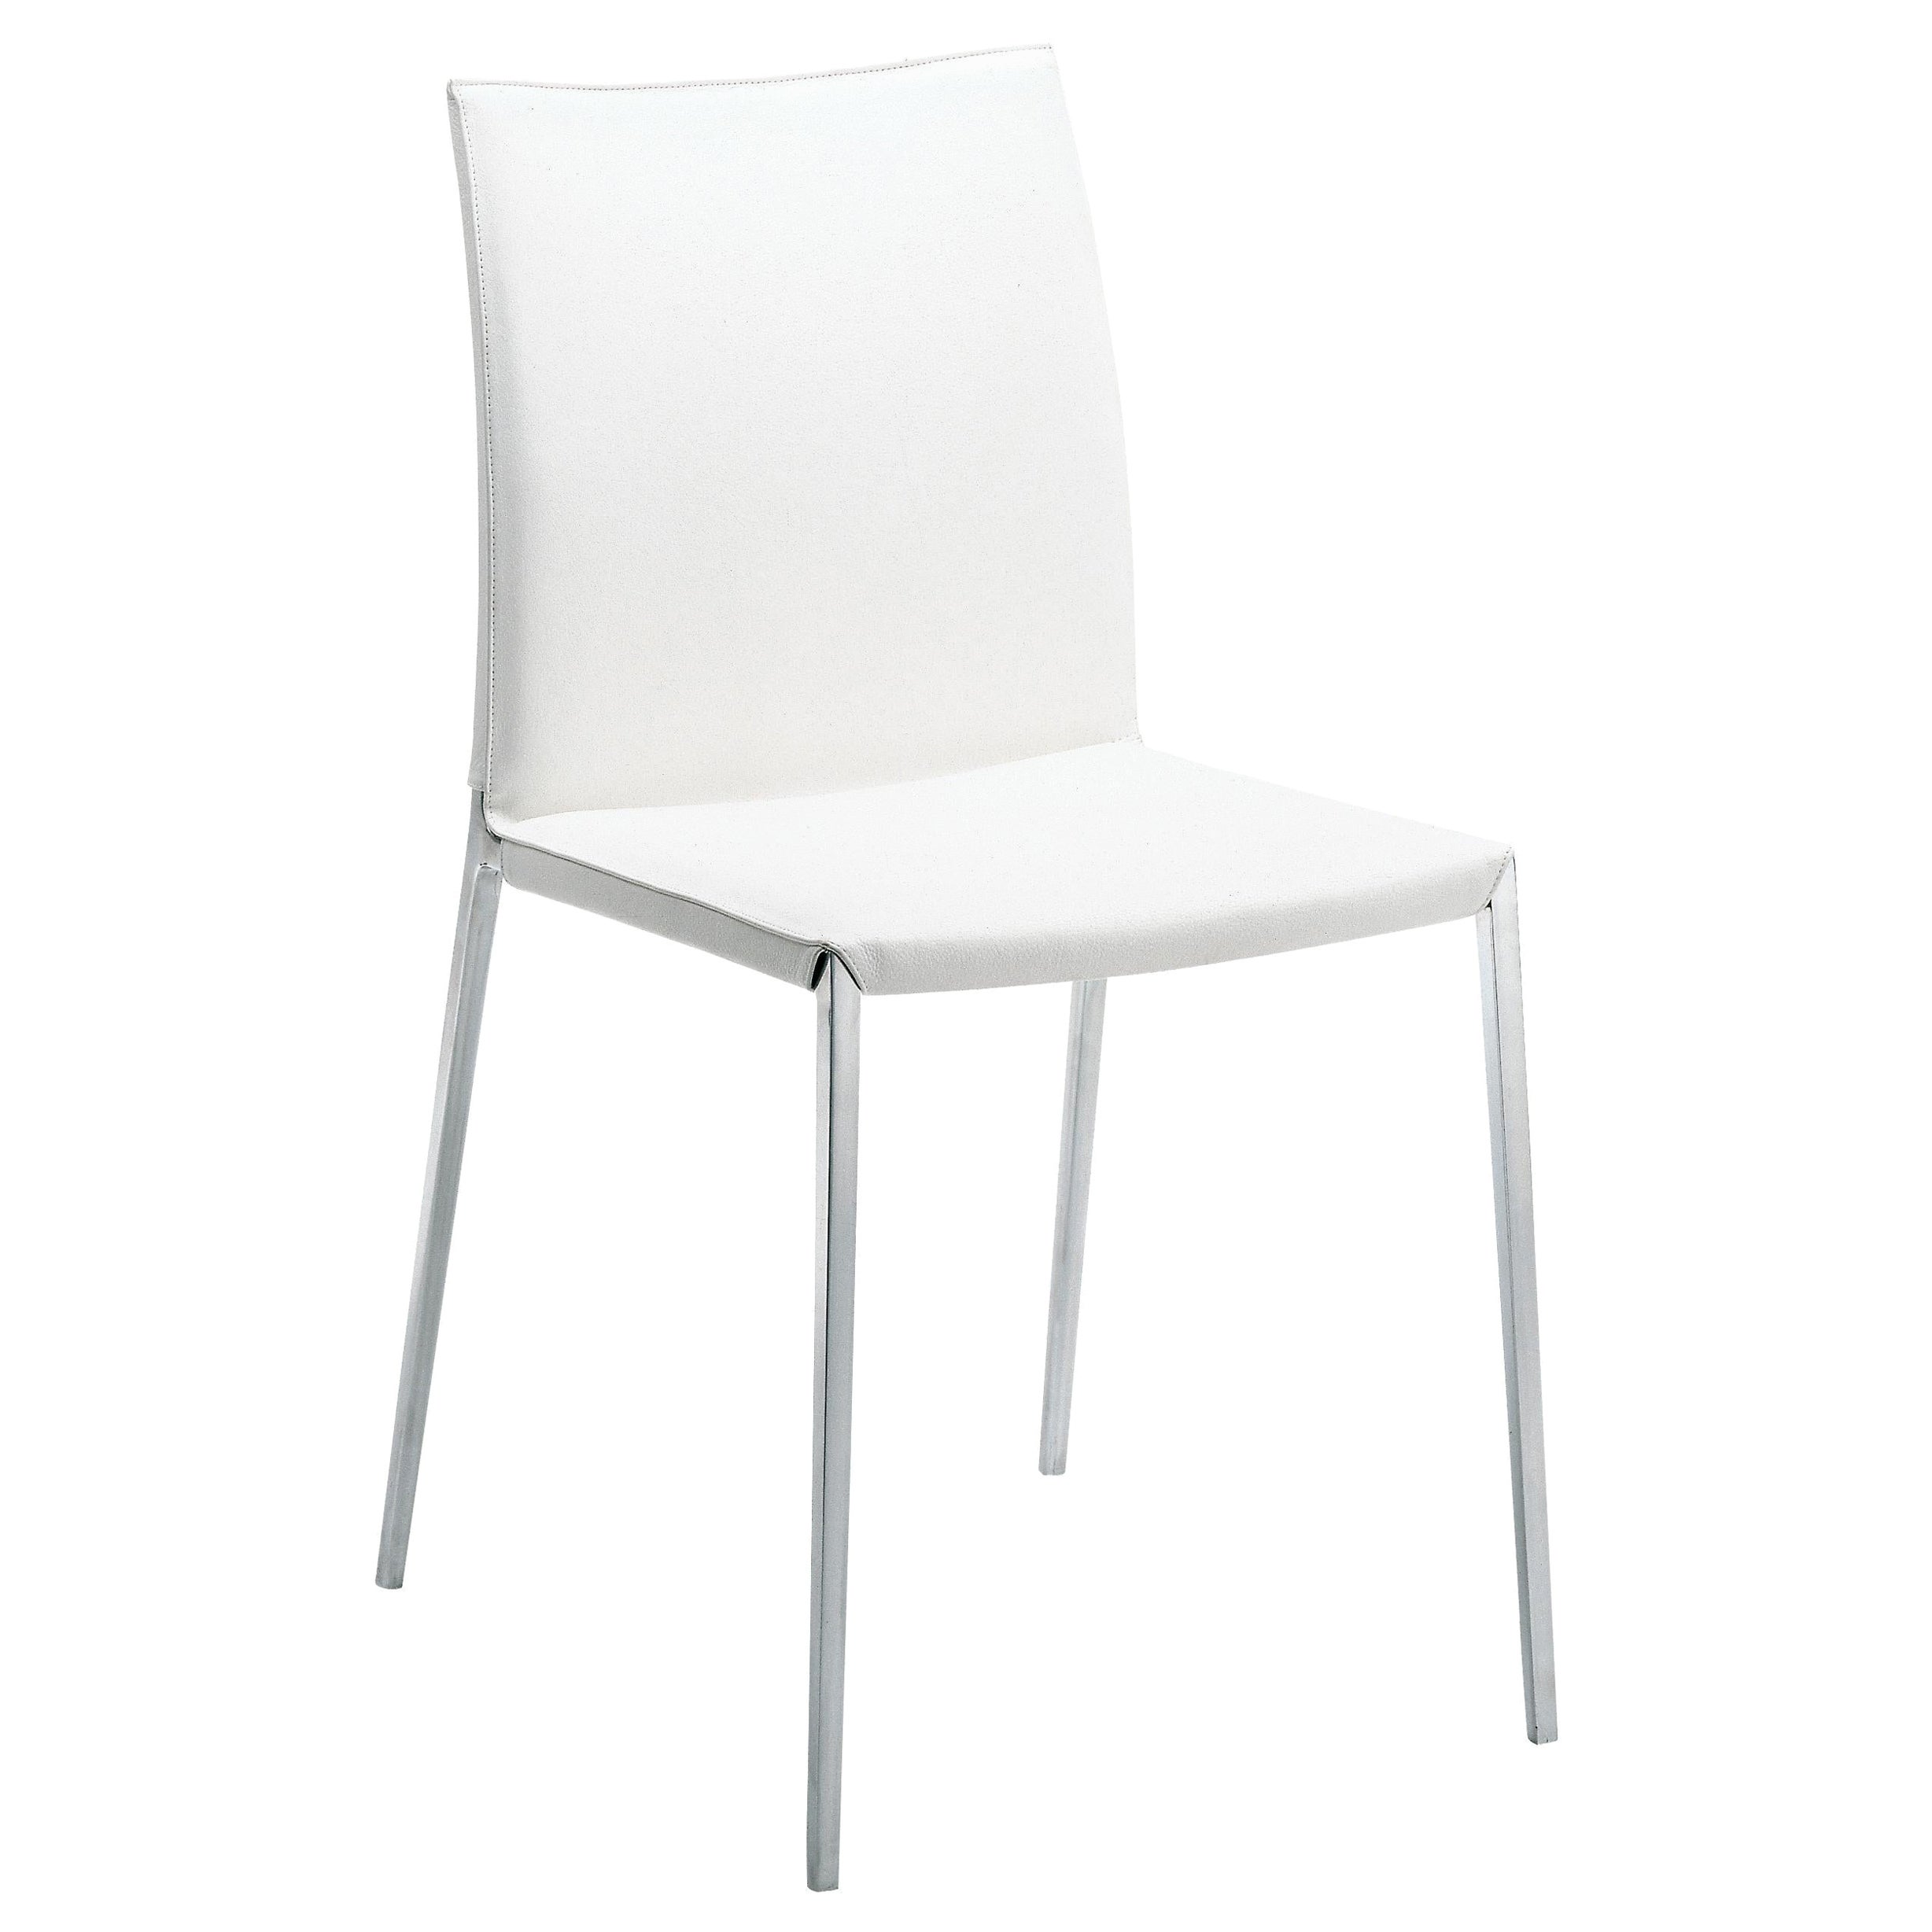 Zanotta Lia-Stuhl aus weißer Polsterung mit poliertem Aluminiumrahmen